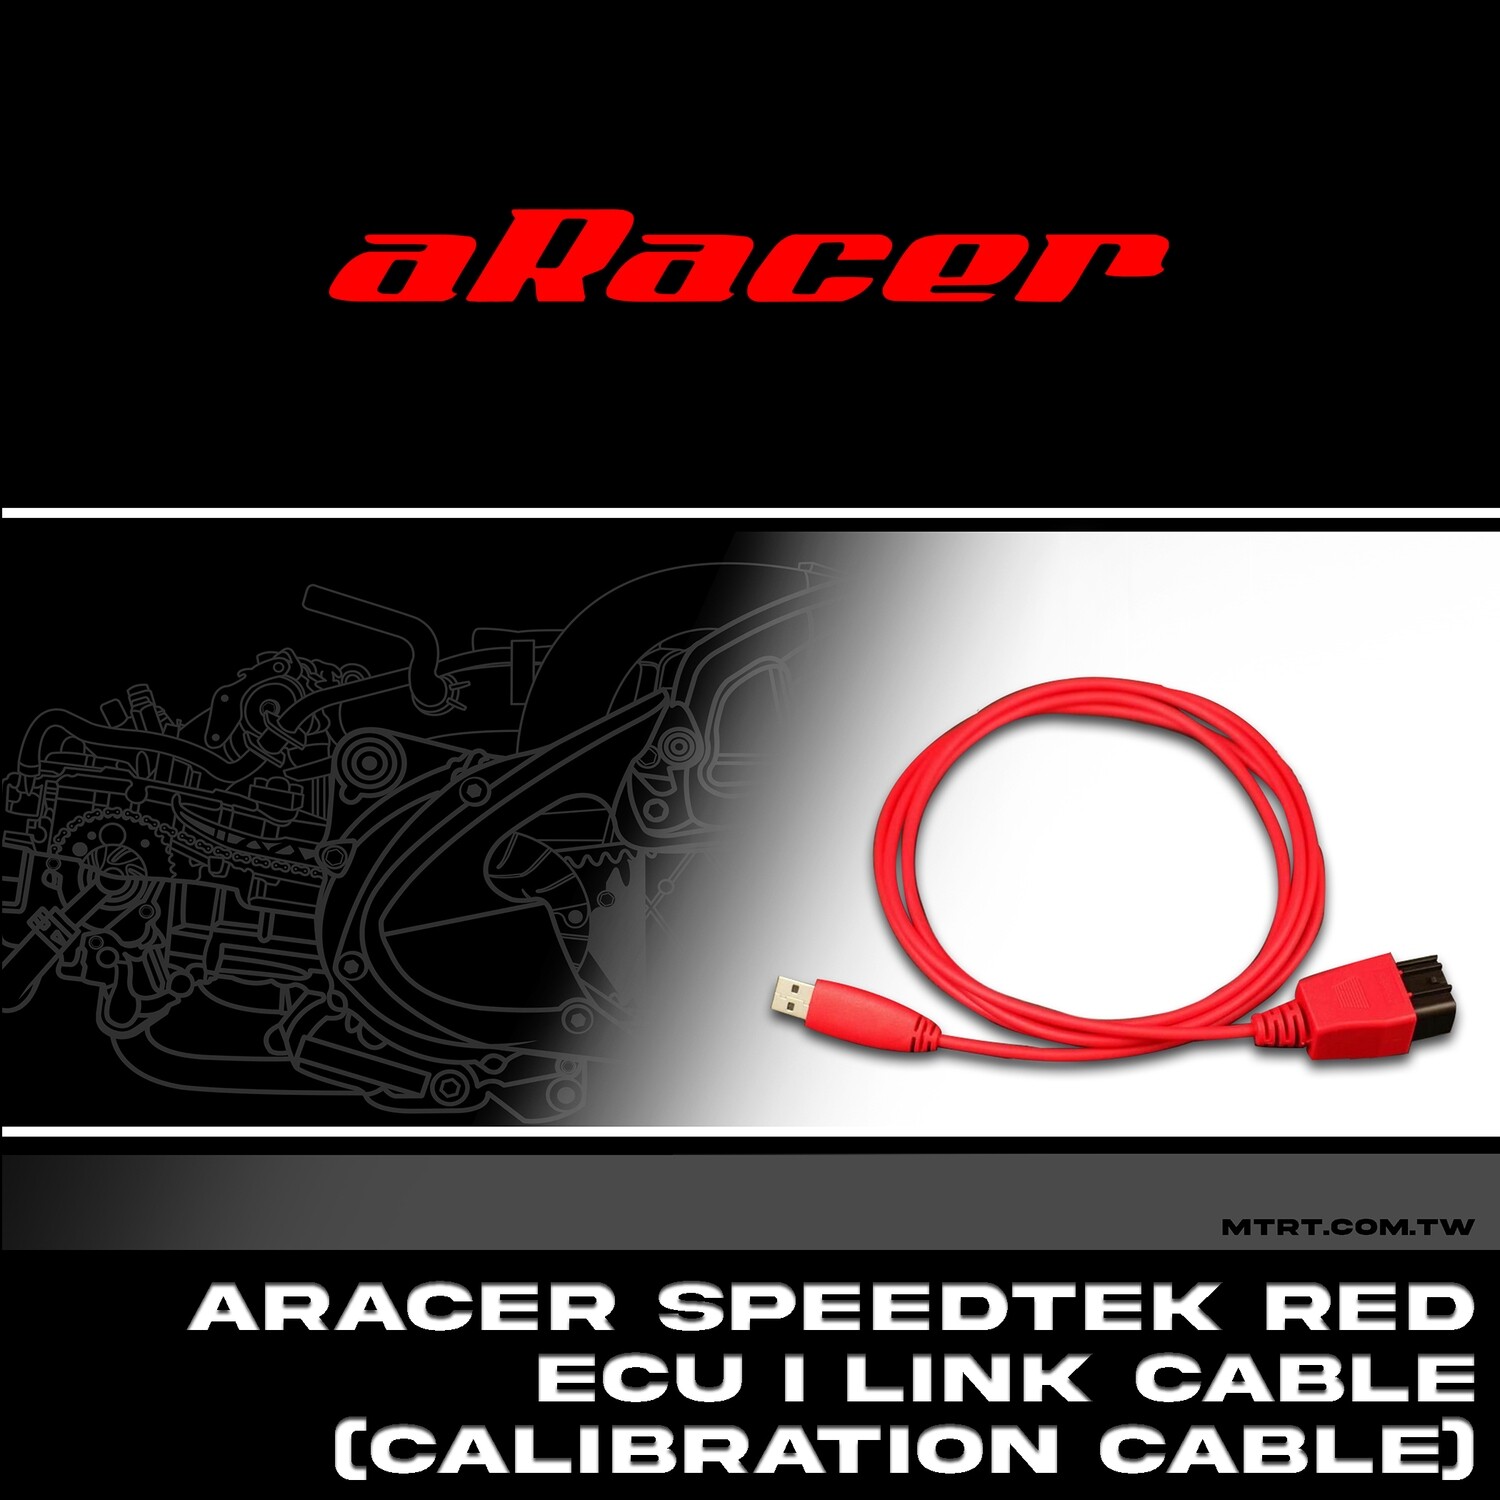 ARACER SPEEDTEK RED ECU i LINK CABLE CALIBRATION CABLE